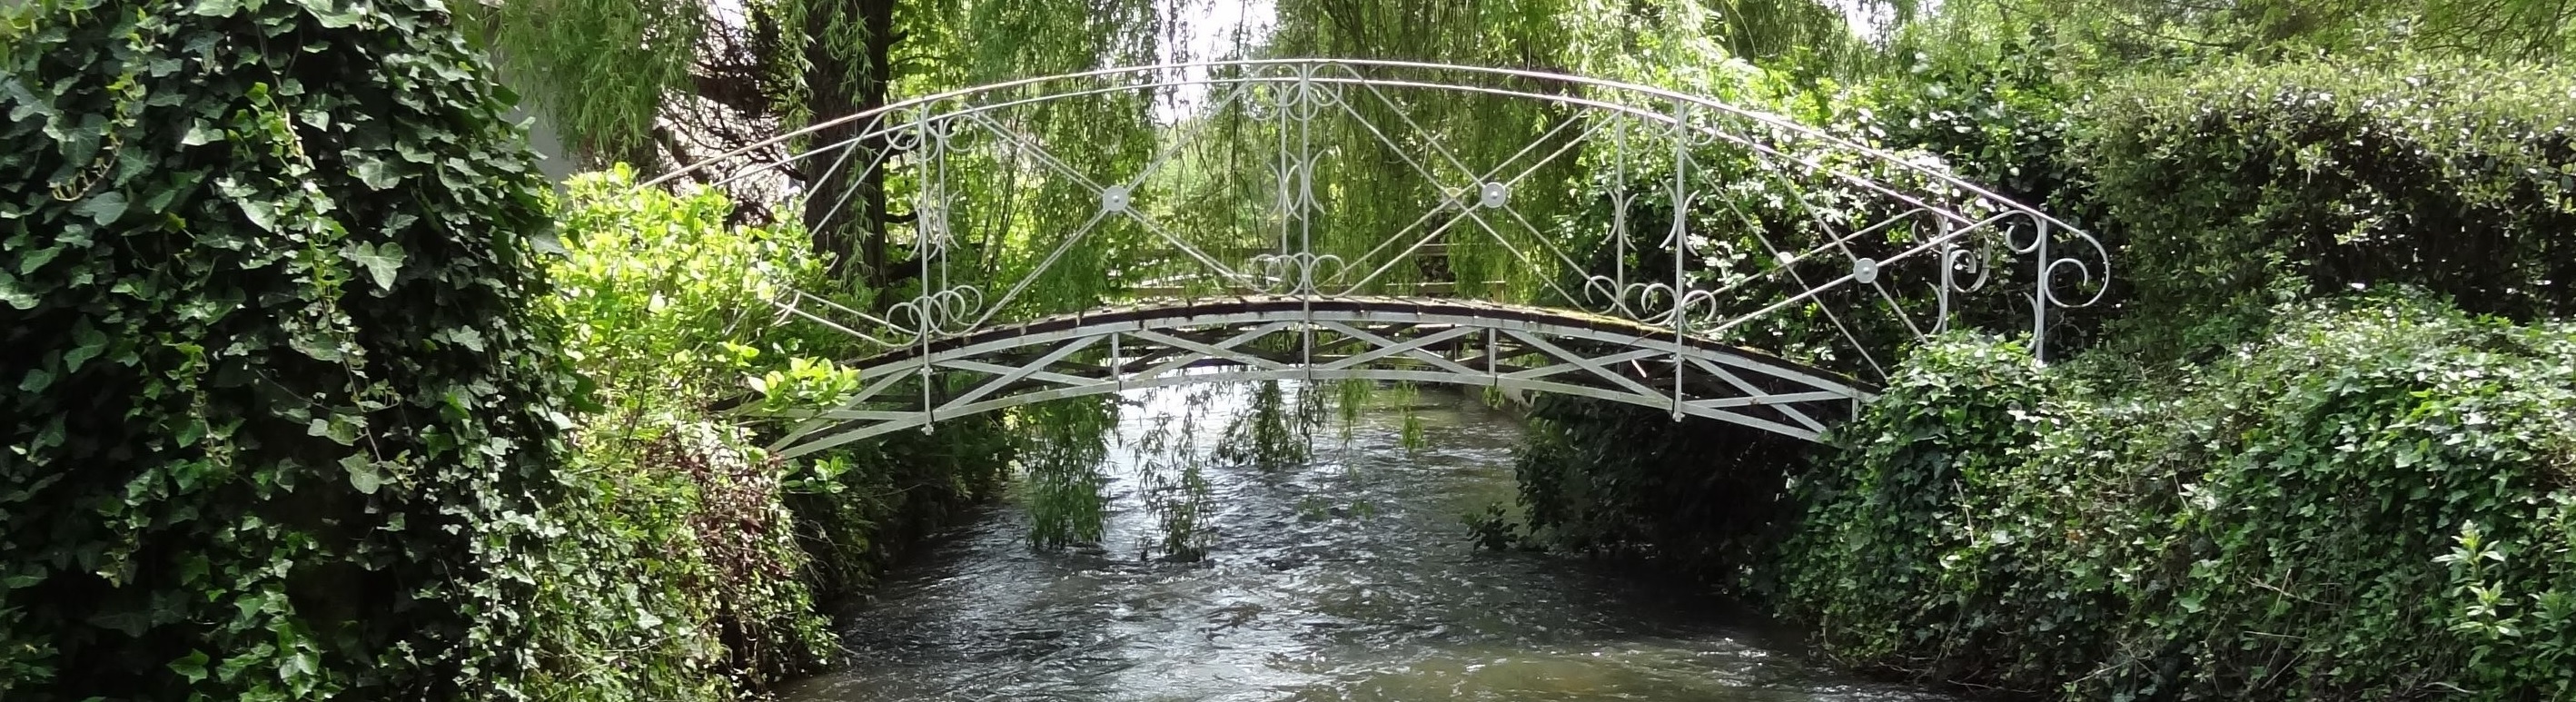 rivière claire qui passe souqs un pont en fer forgé